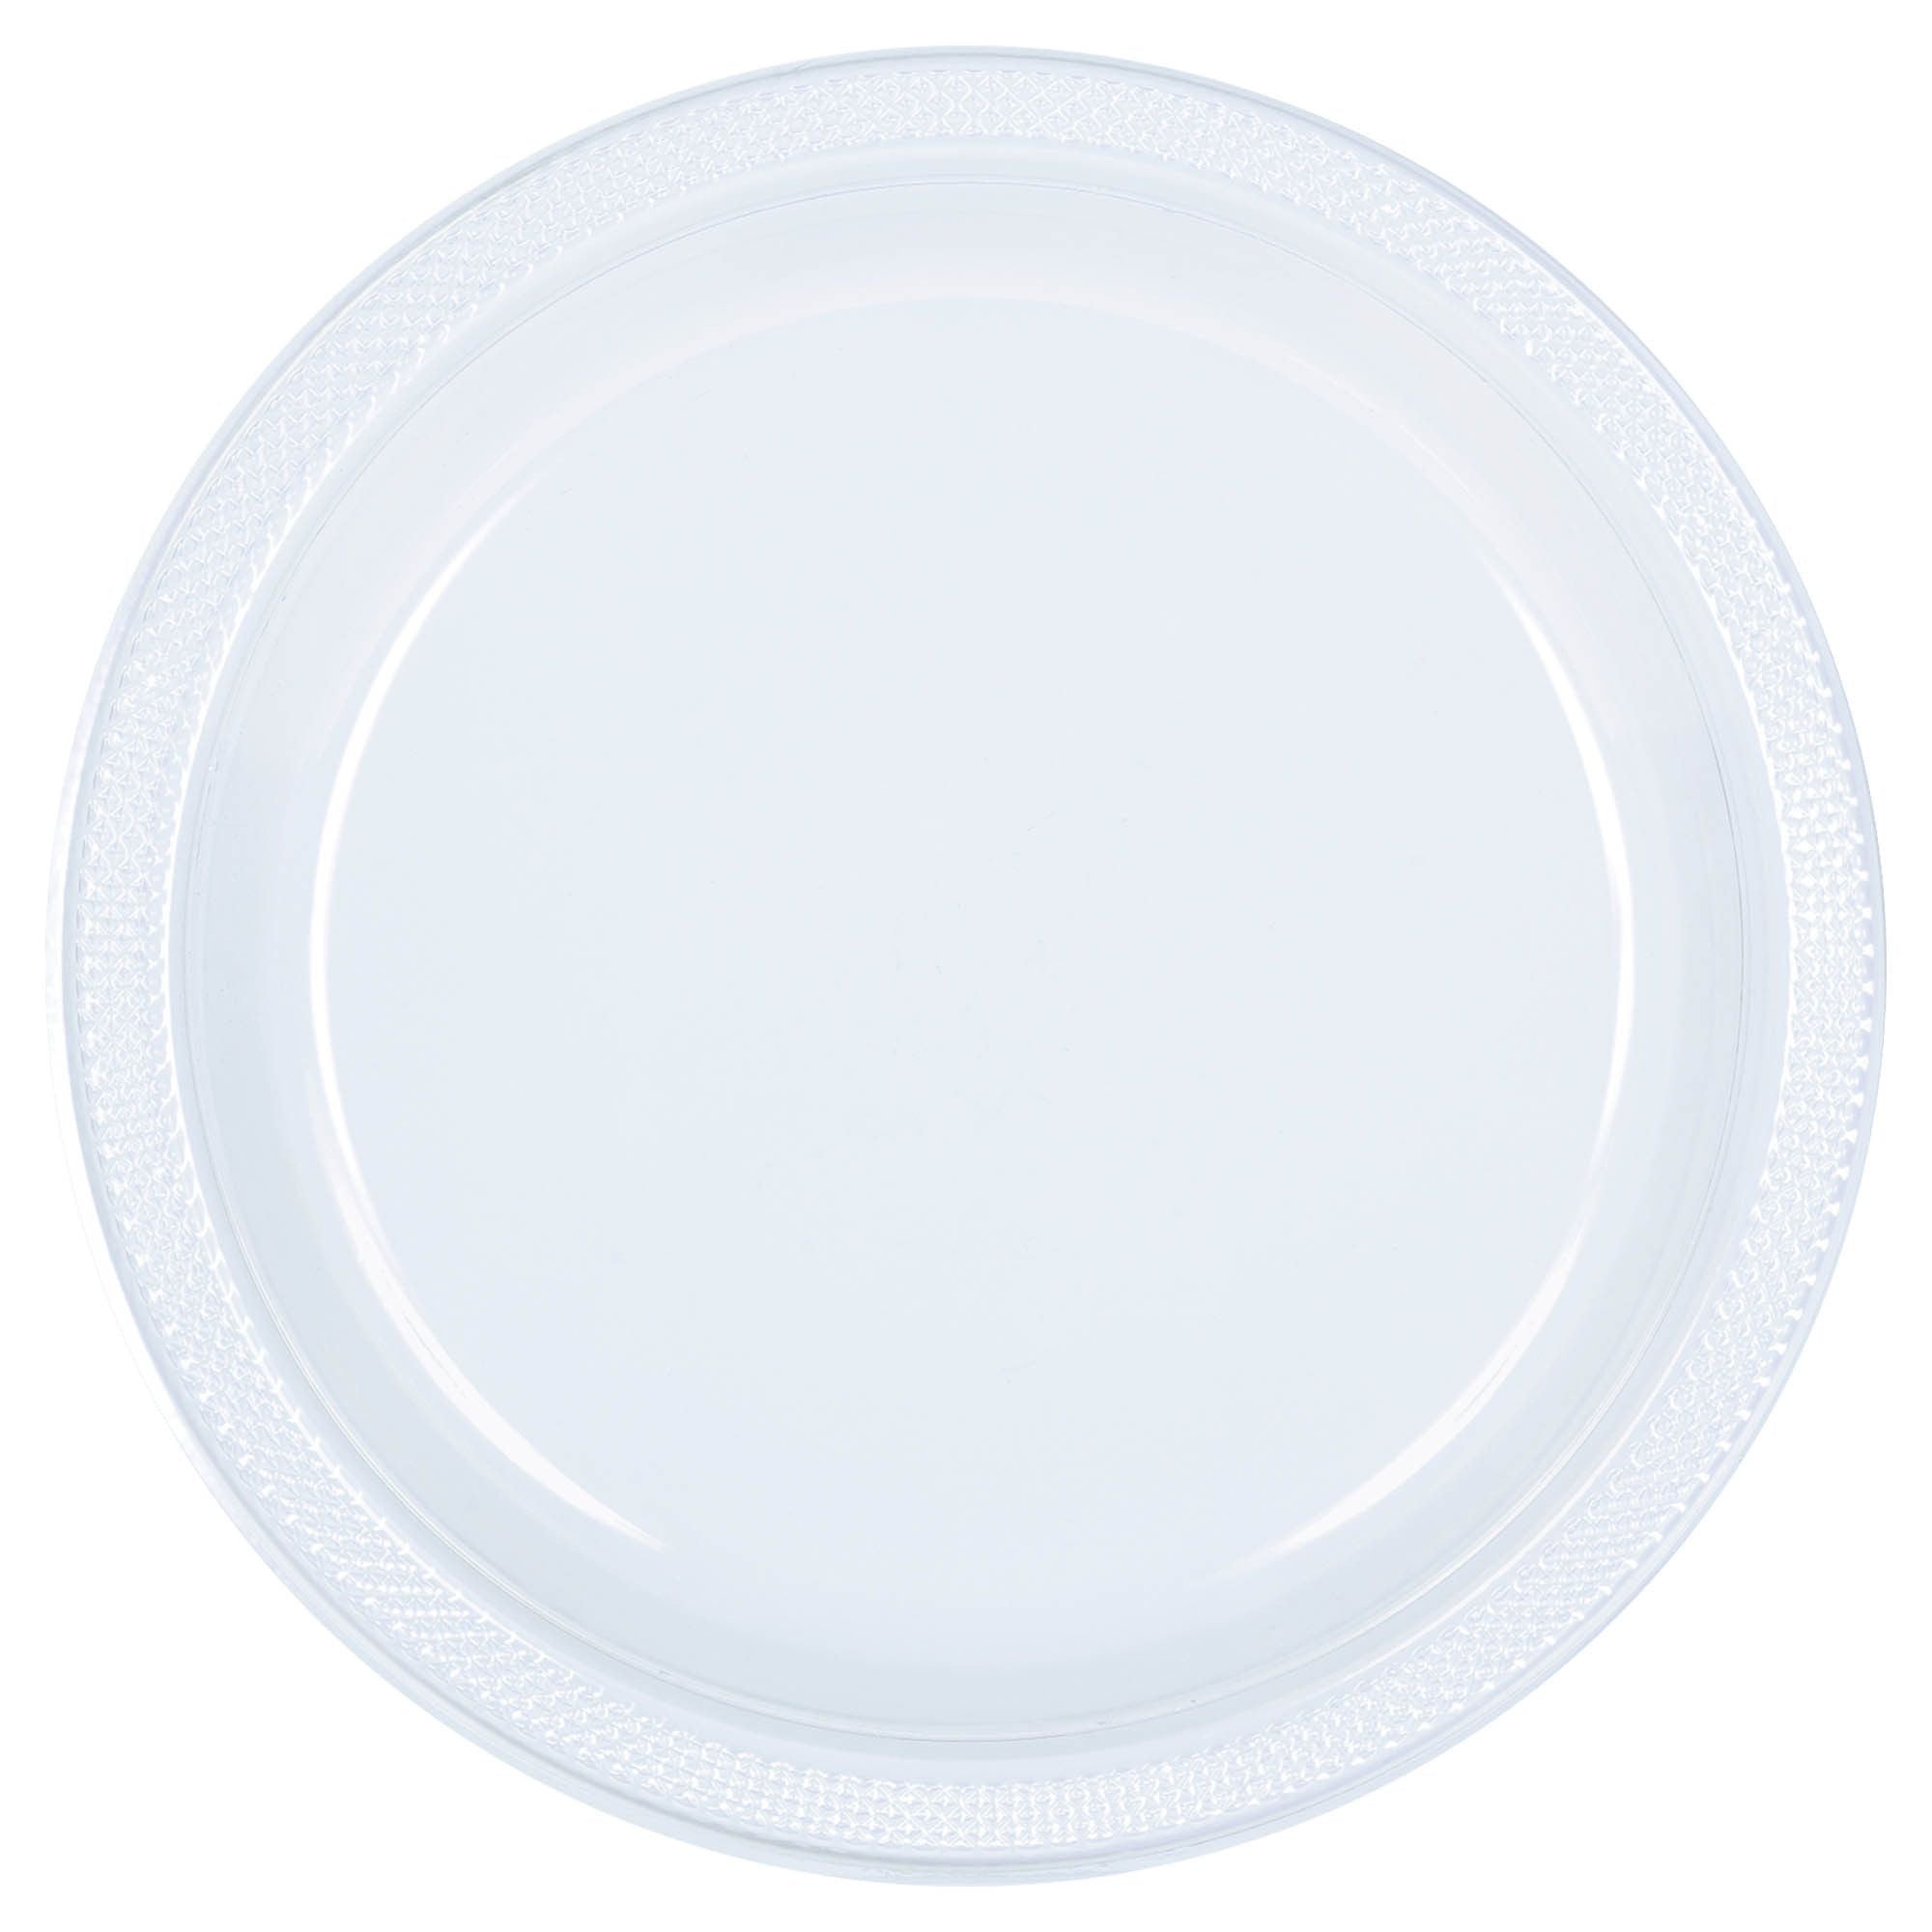 Clear Premium Plastic Round Plates  - 10.25"– Set of 10